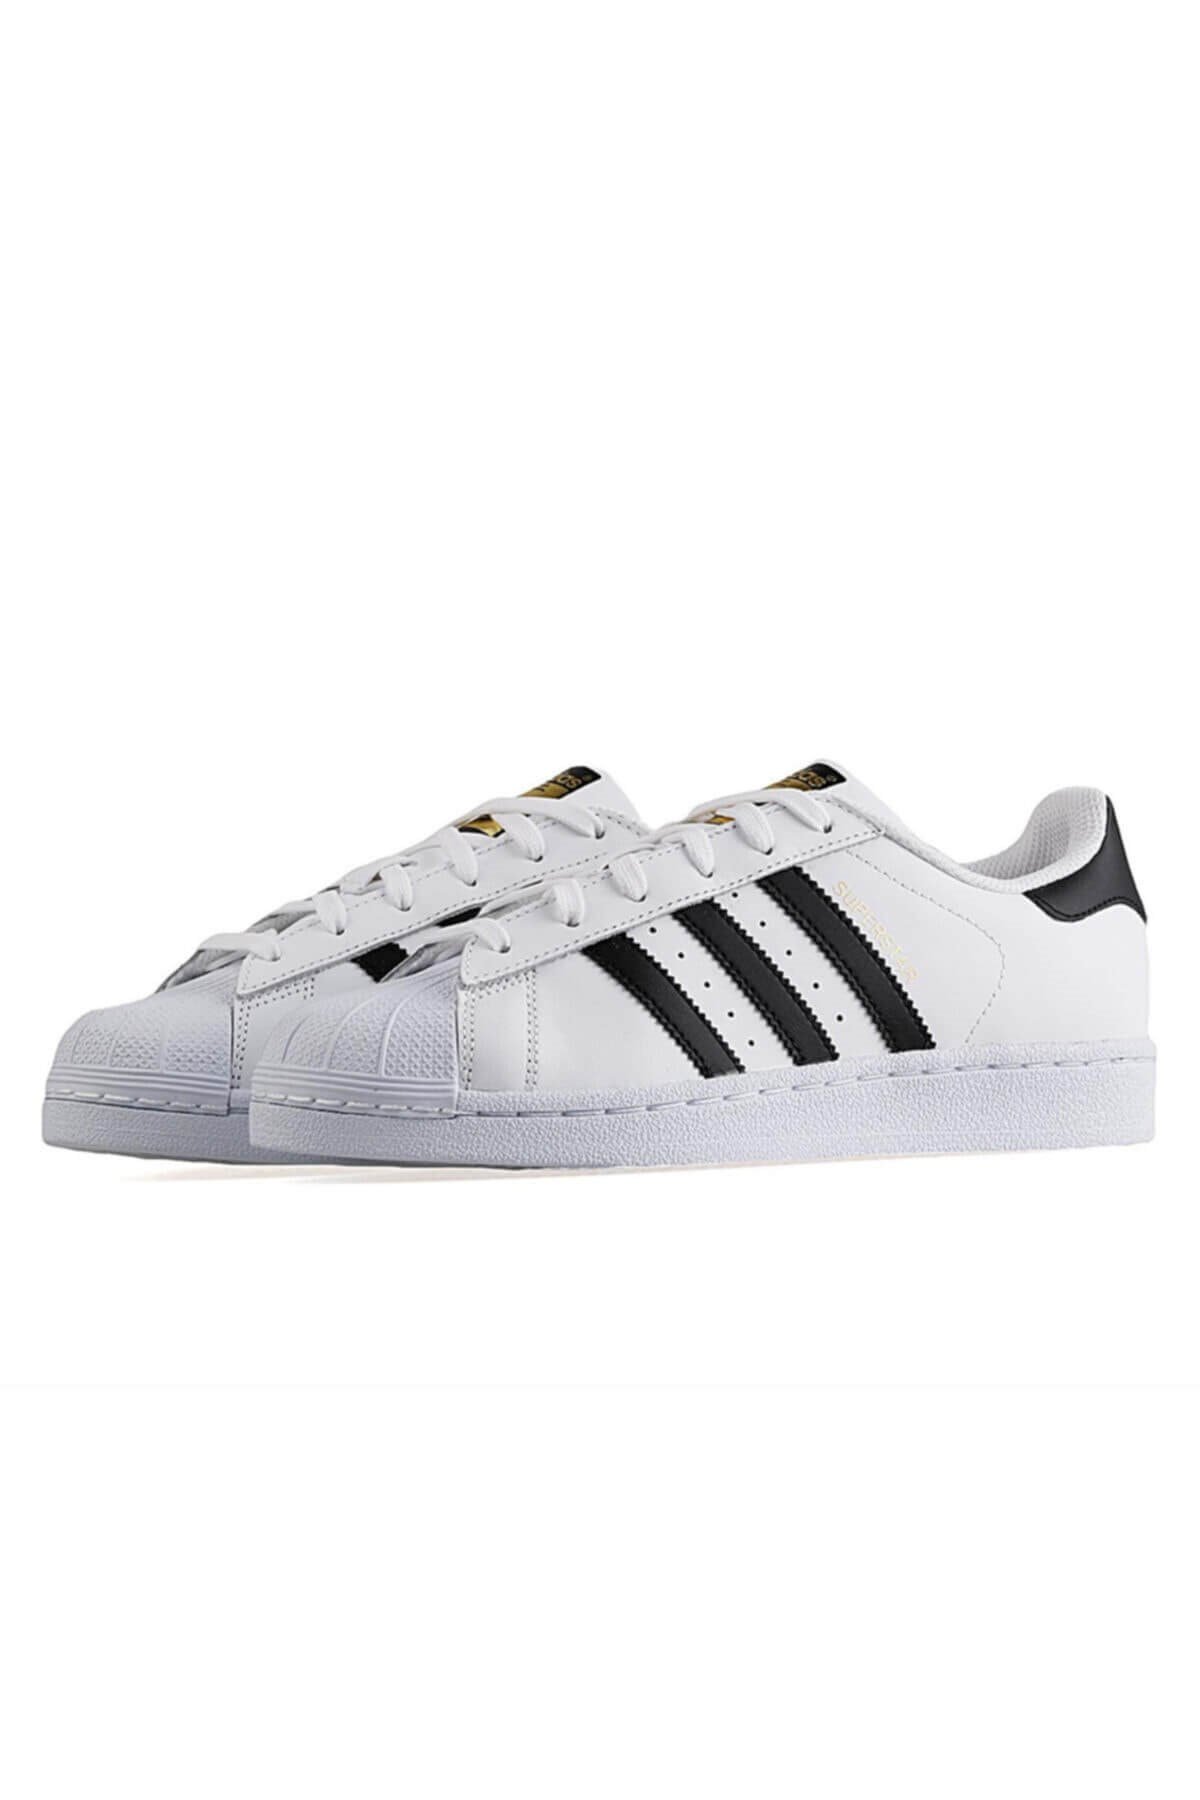 Adidas Superstar Günlük Erkek Ayakkabı- C77124